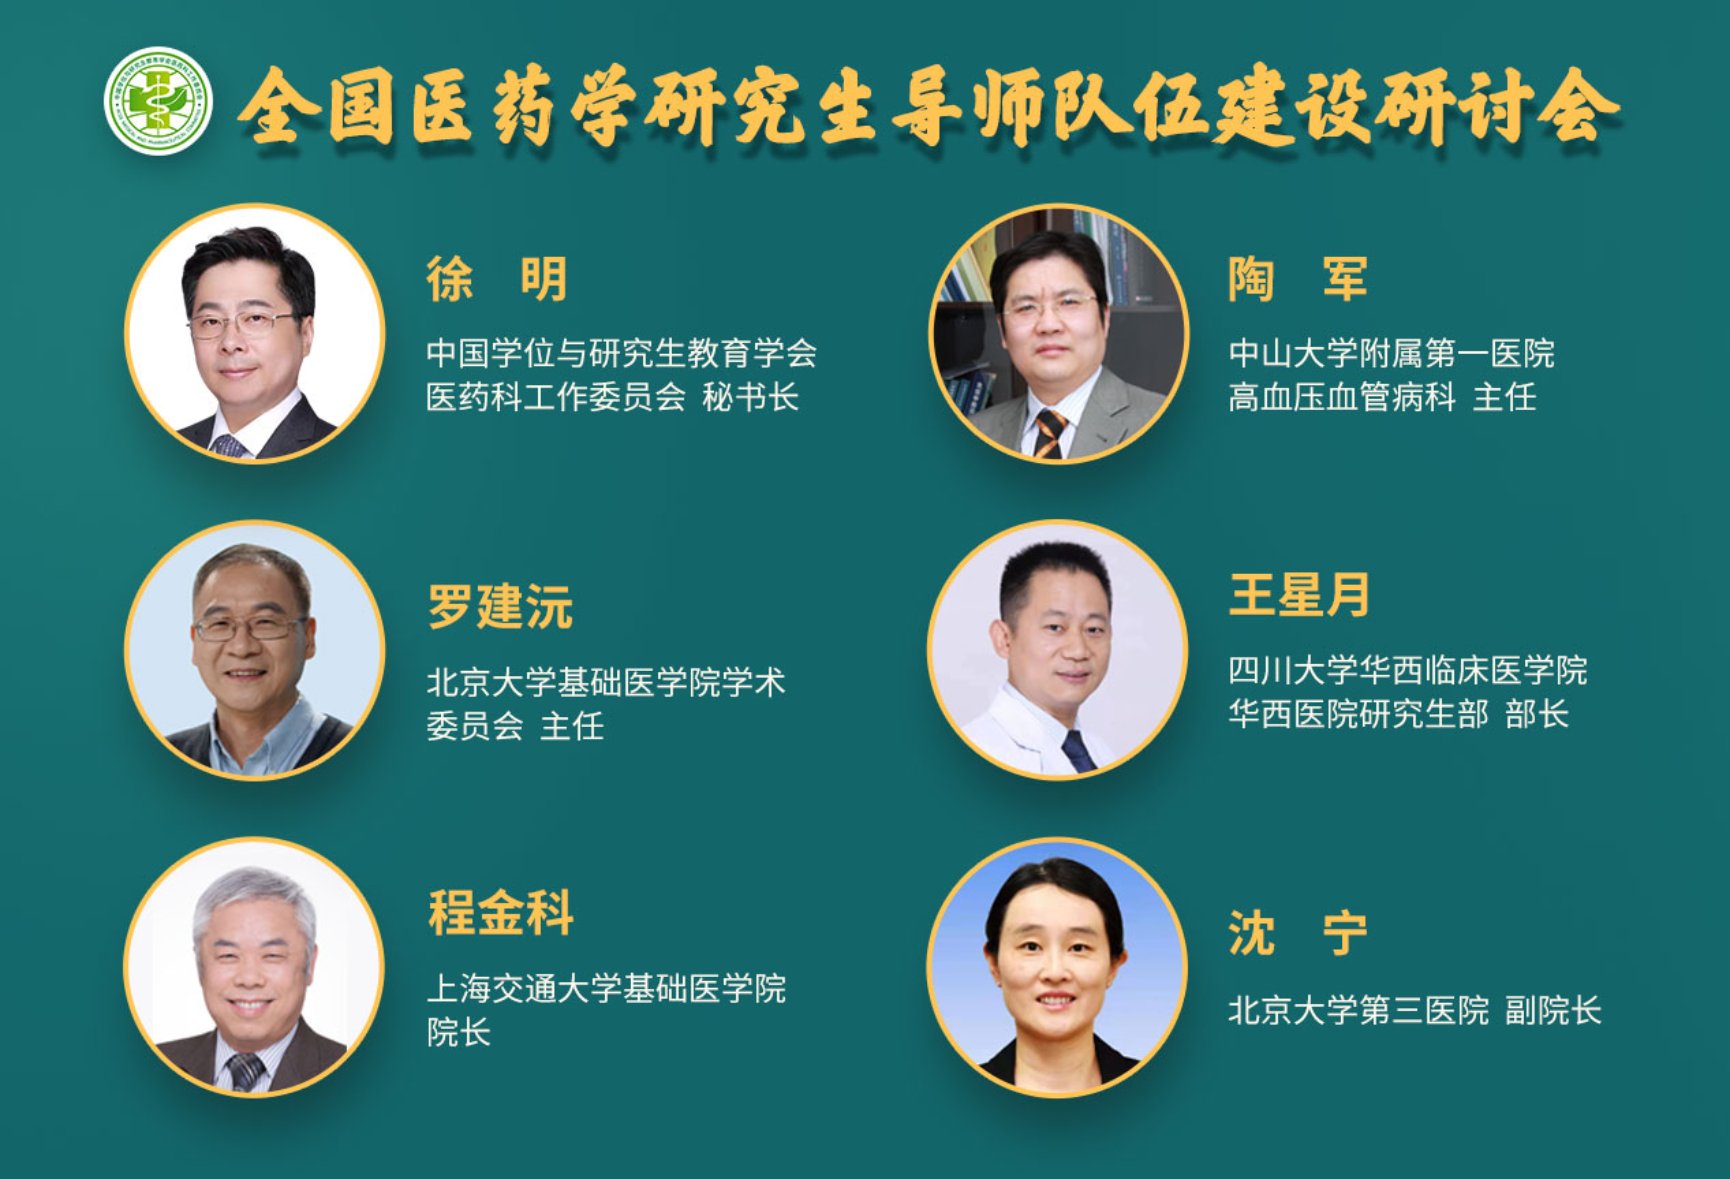 北京大学研究生院医学部分院 举办全国医药学研究生导师队伍建设研讨会